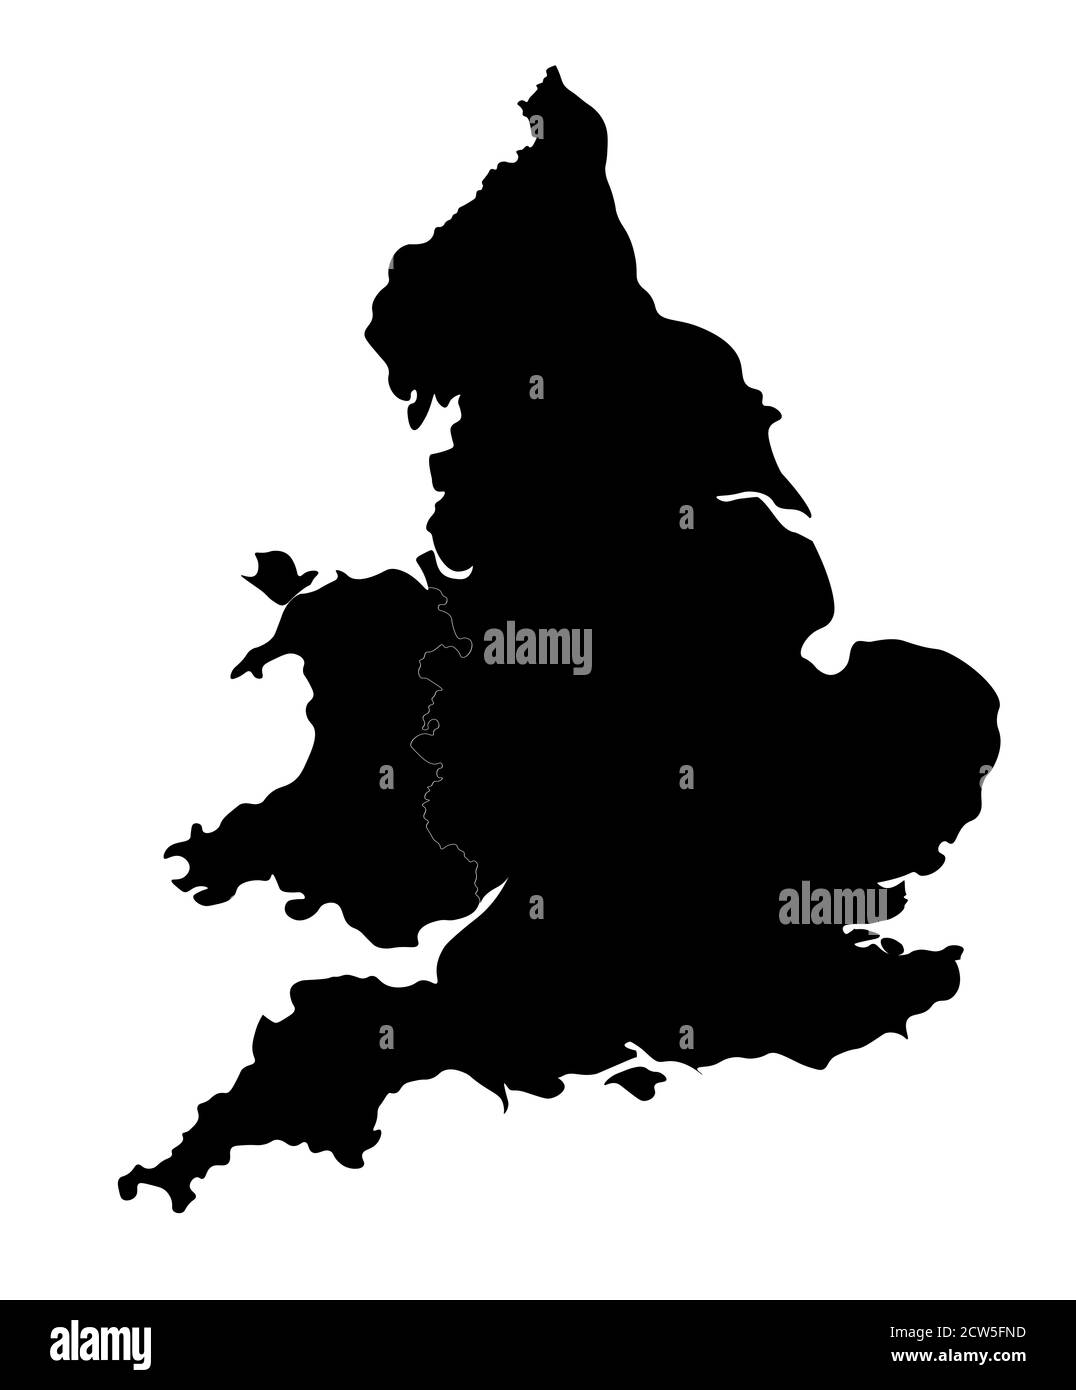 Silhouette di Inghilterra e Galles. Mappa dalla forma gradevole con bordi arrotondati per un look elegante. Foto Stock